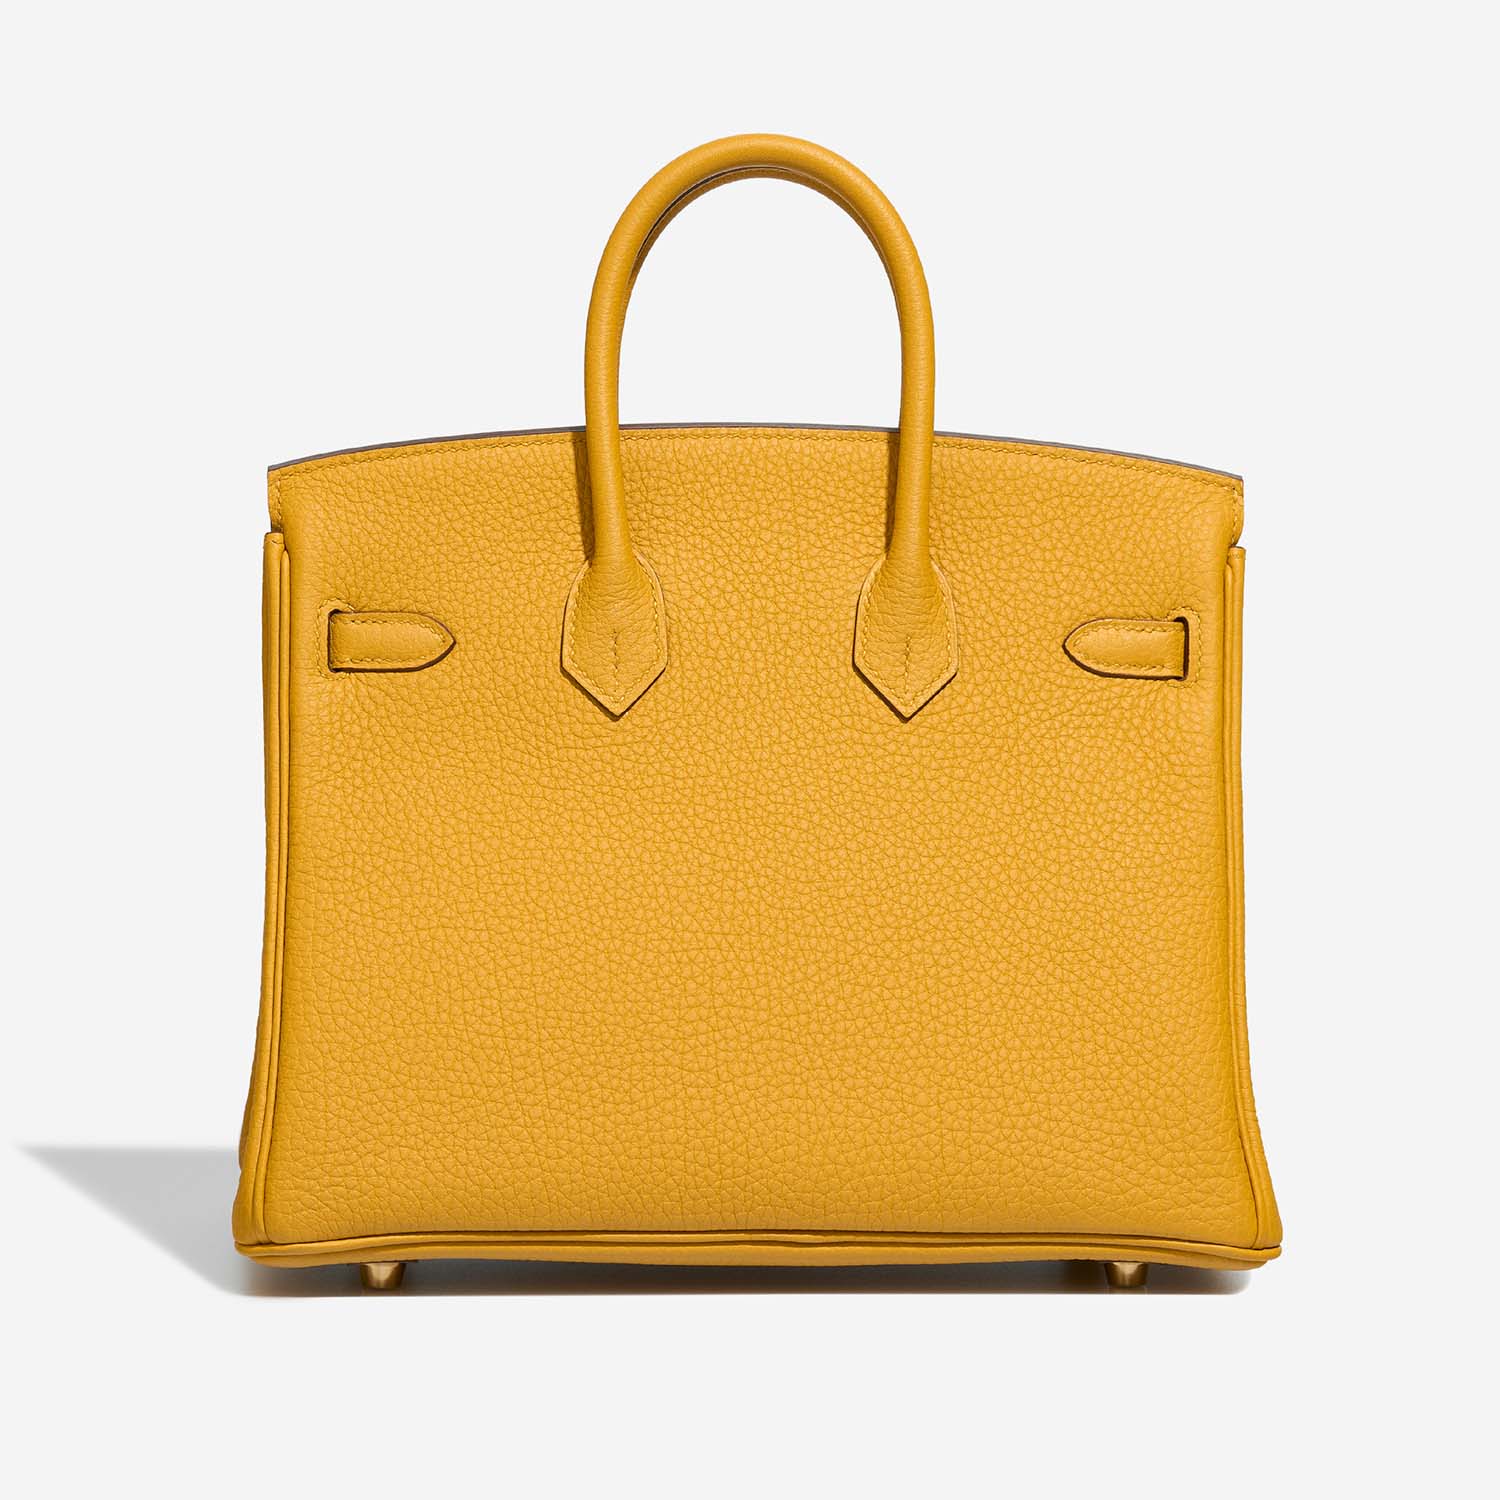 Hermès Birkin 25 JauneAmbre Back | Verkaufen Sie Ihre Designertasche auf Saclab.com